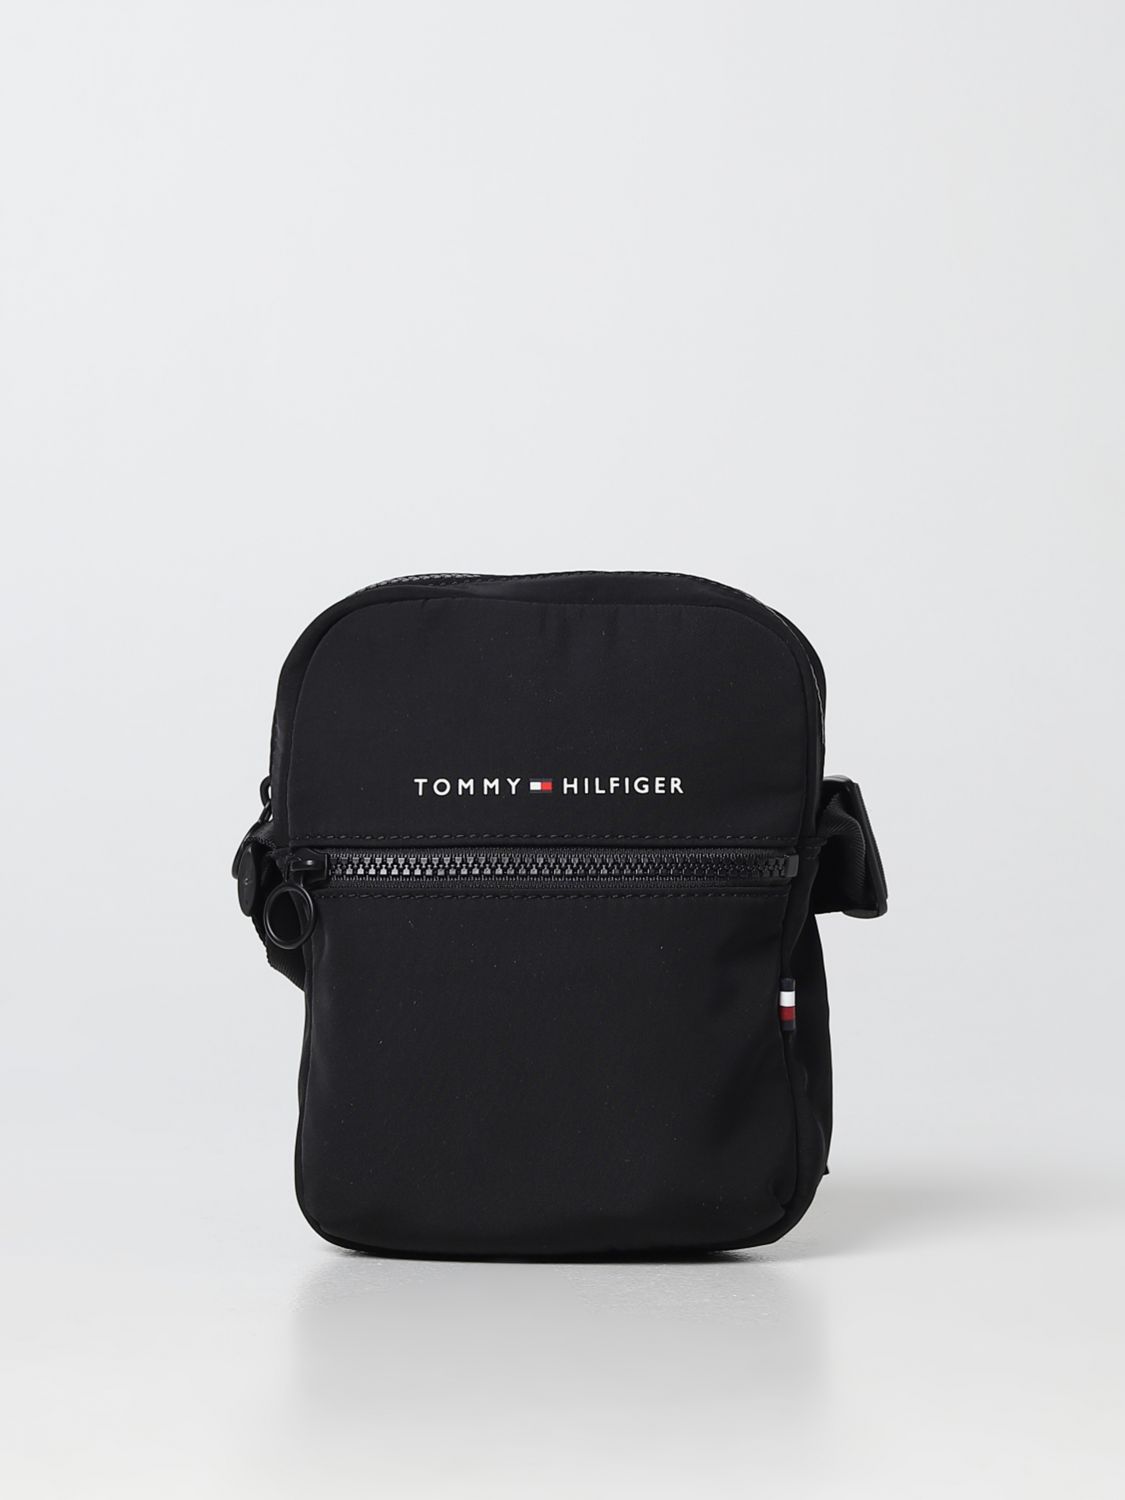 HILFIGER: shoulder bag for man Black | Tommy Hilfiger shoulder bag AM0AM10550 online GIGLIO.COM